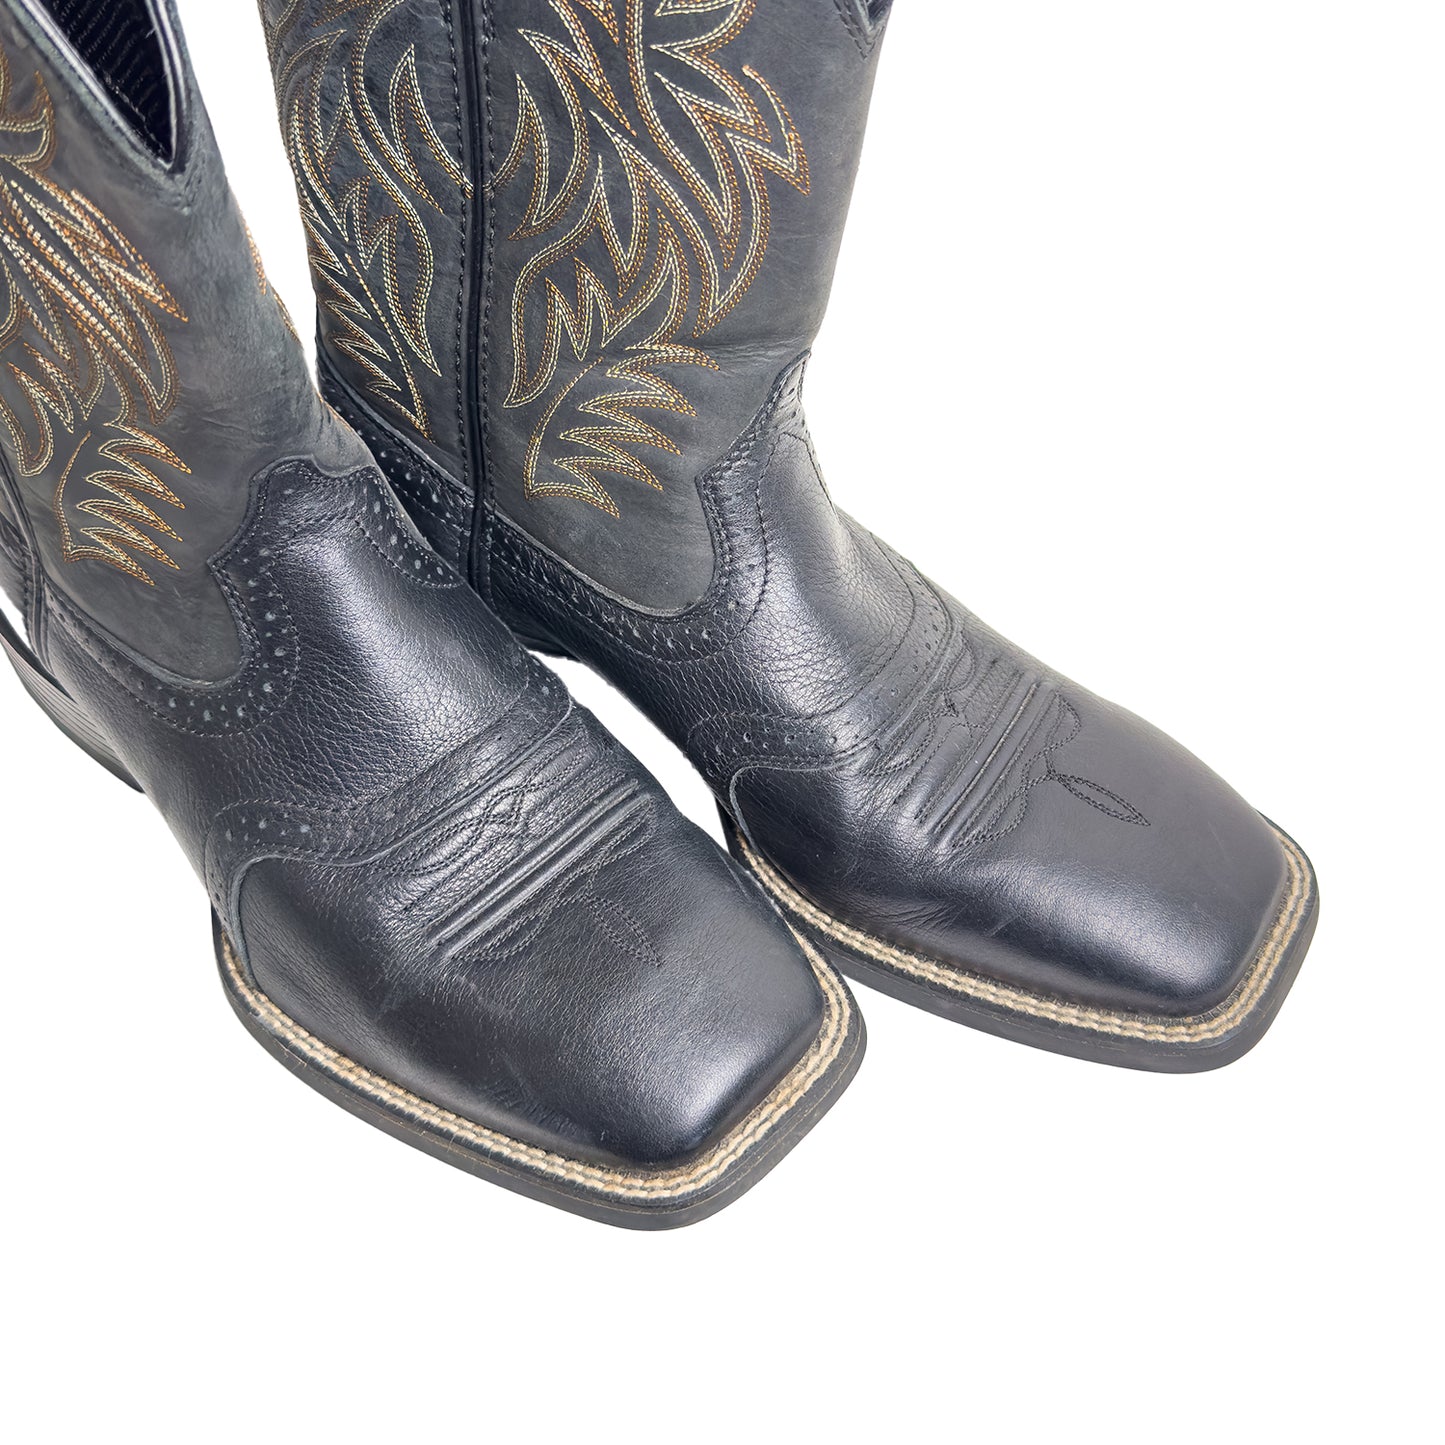 Ariat Mens Cowboy Boots - Sz 9